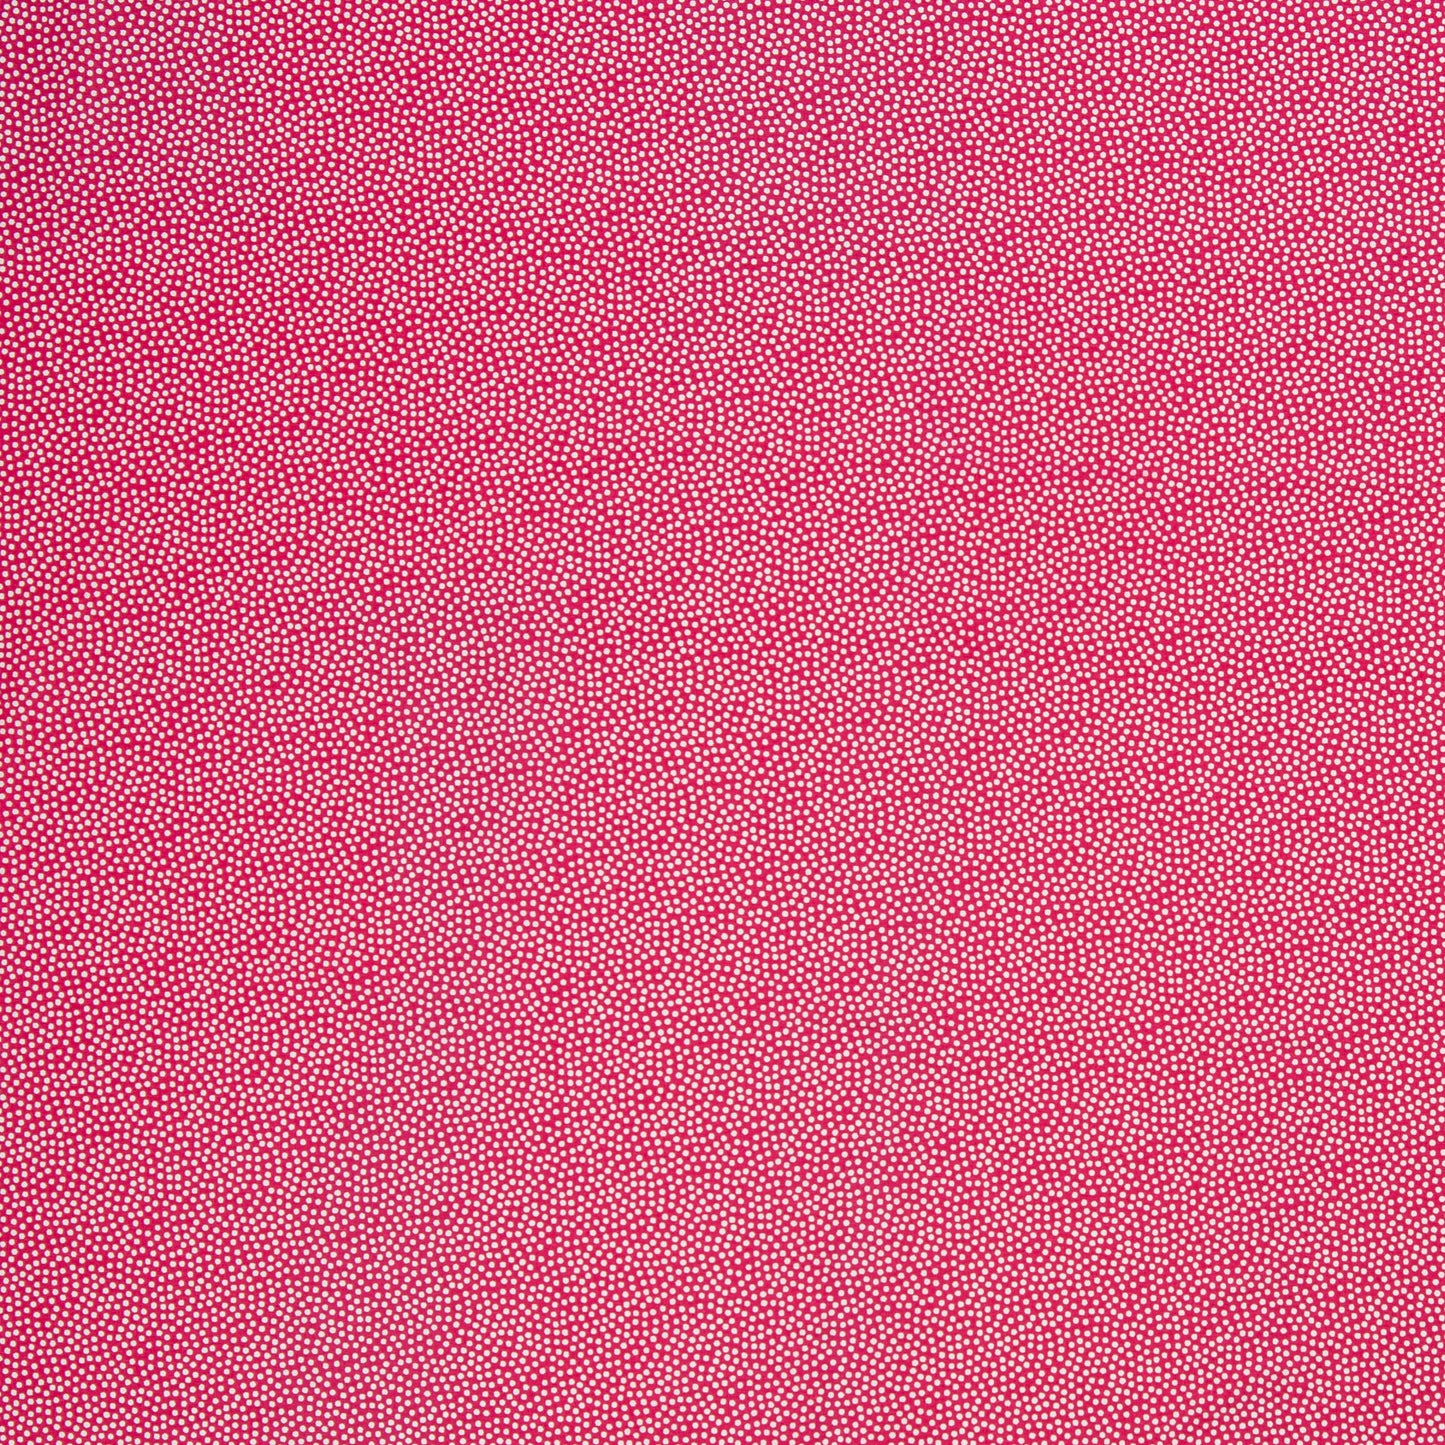 Baumwolle Punkte Dotty weiß pink